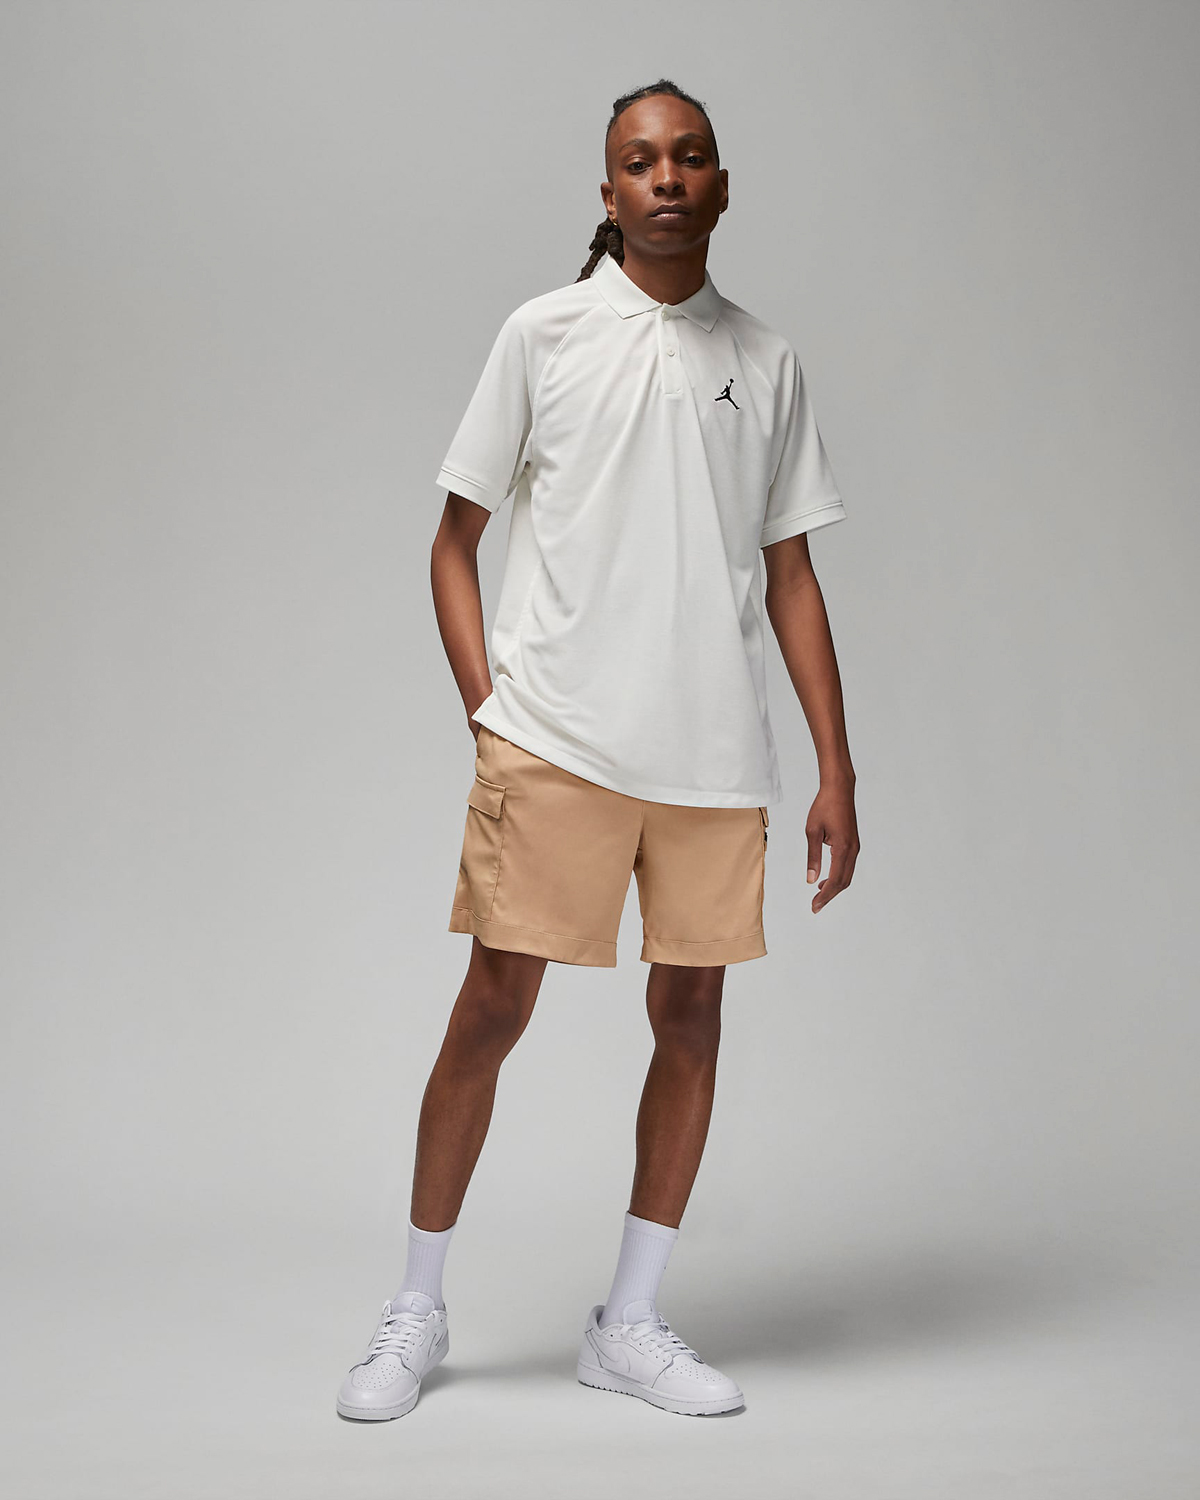 Jordan-Golf-Shorts-Hemp-Outfit